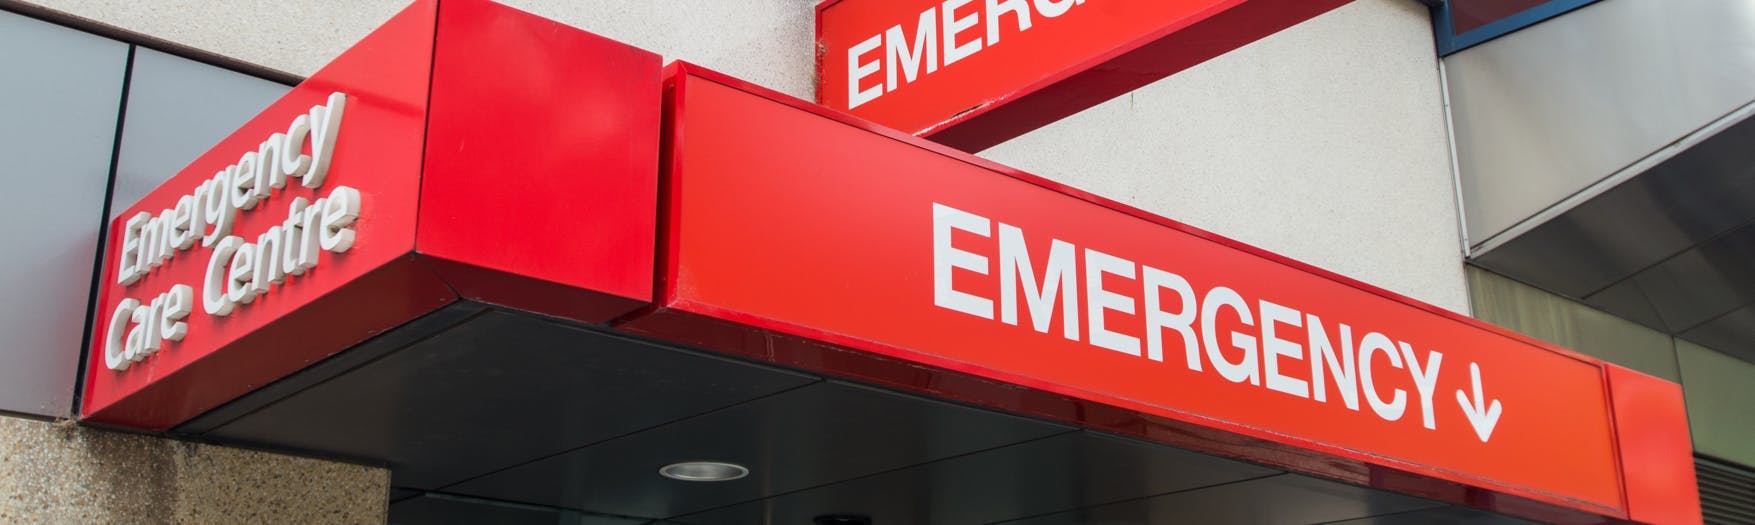 Emergency Care Center Signage 